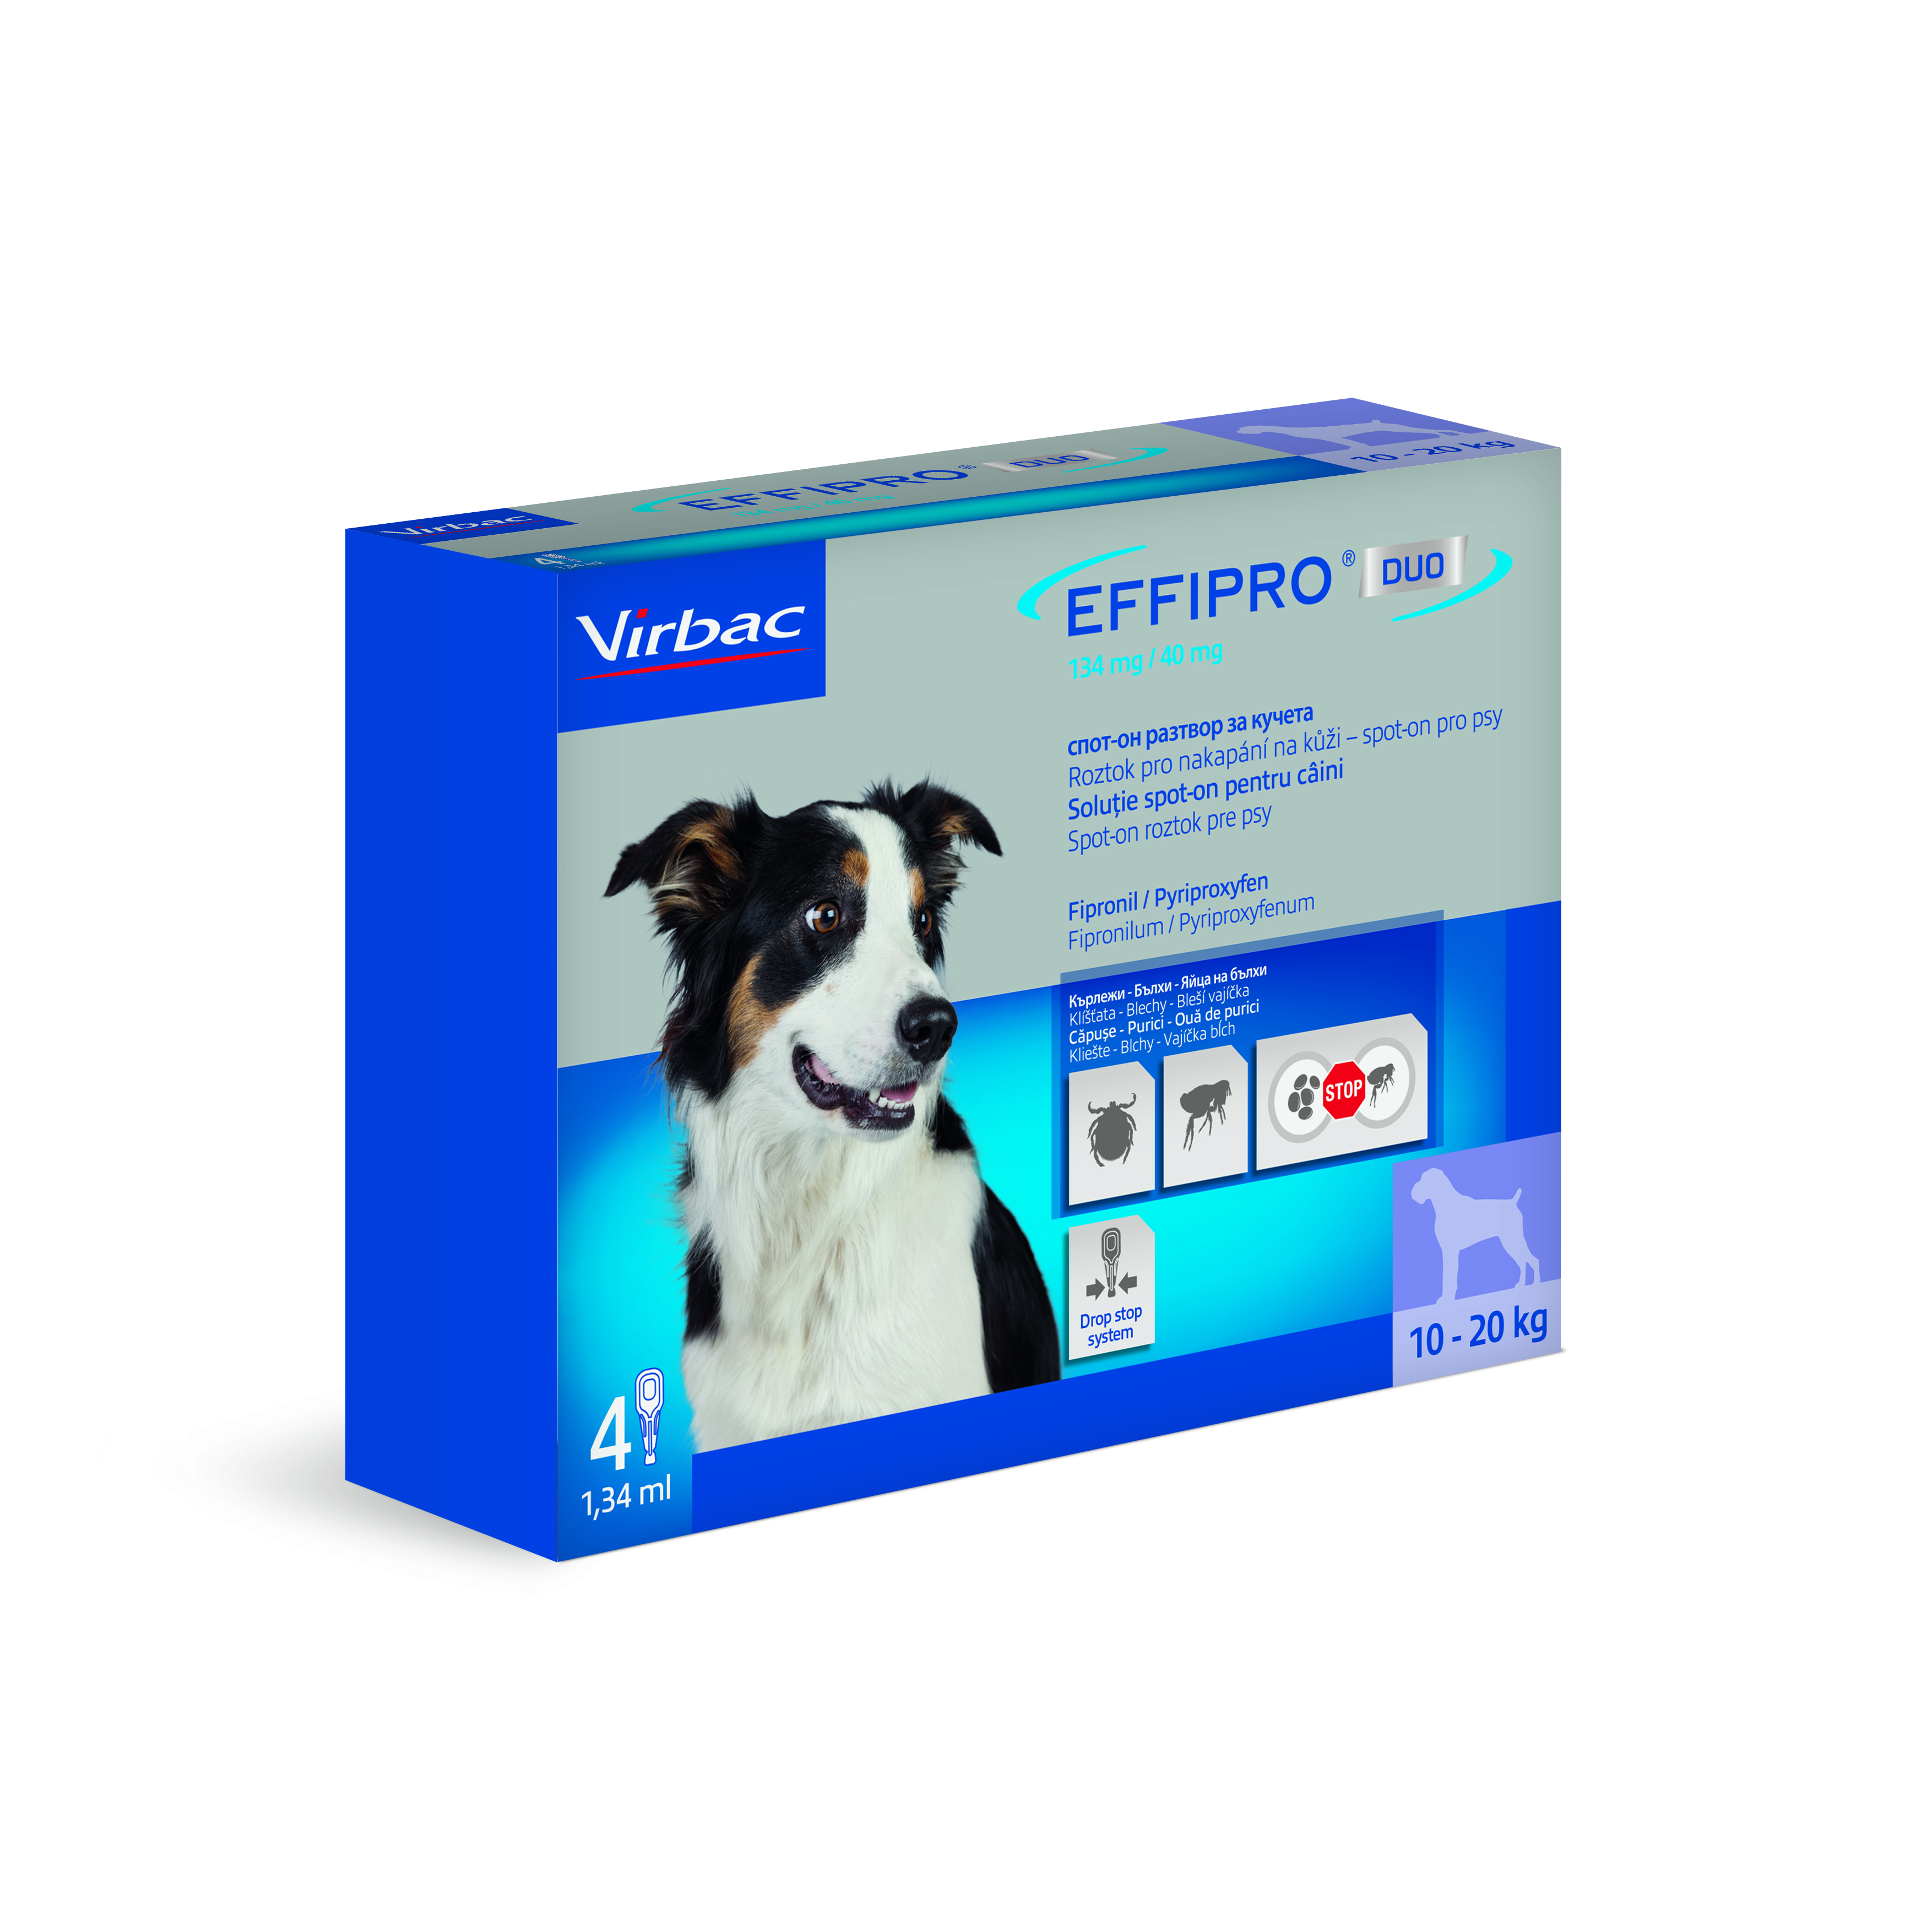 Effipro duo 134mg/40 mg, roztok pro nakapání na kůži - spot-on pro střední psy 4 x 1,34 ml